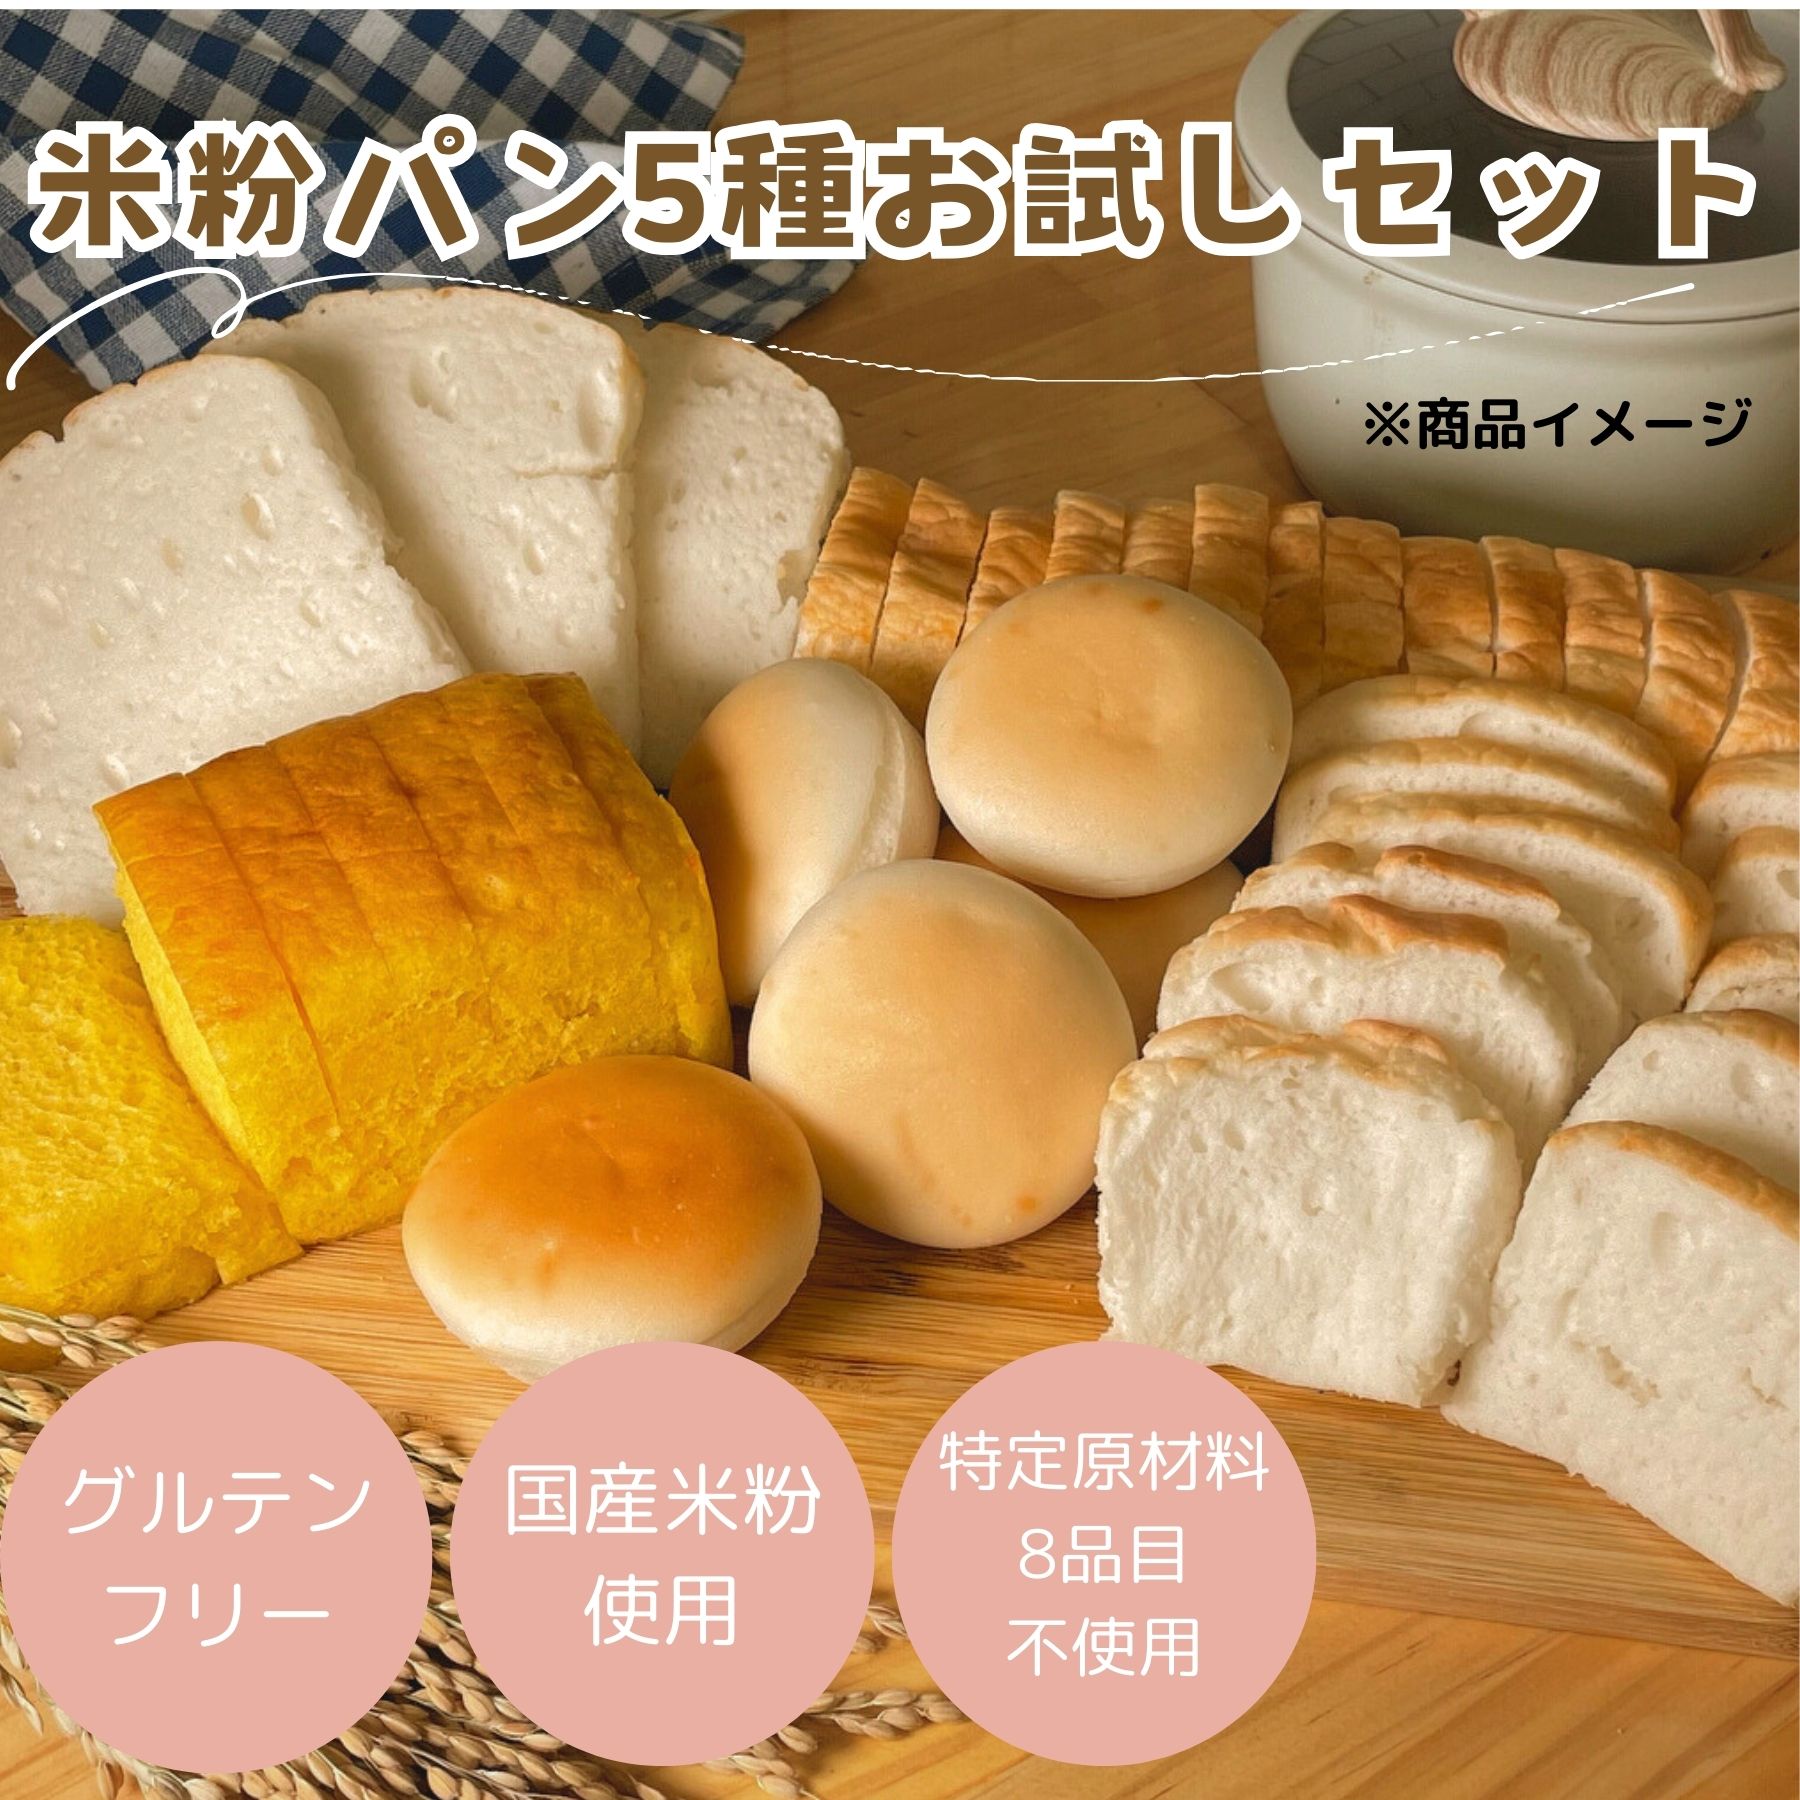 (公式) みんなの食卓 米粉パン アソートセット 5種 お試し 日本ハム グルテンフリー アレルギー対応 送料無料 冷凍